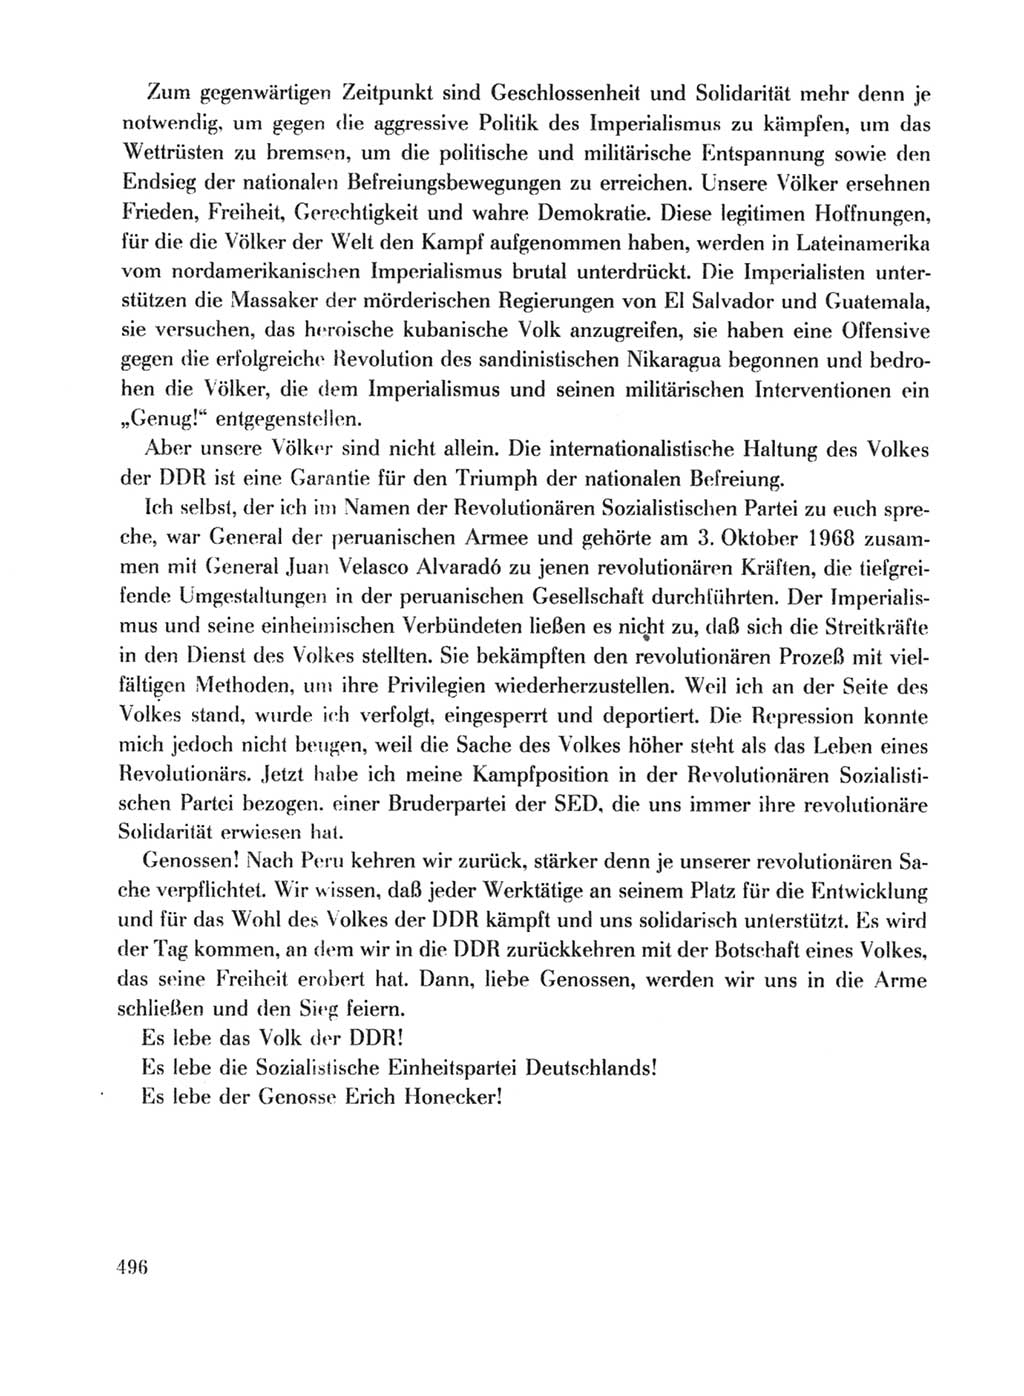 Protokoll der Verhandlungen des Ⅹ. Parteitages der Sozialistischen Einheitspartei Deutschlands (SED) [Deutsche Demokratische Republik (DDR)] 1981, Band 1, Seite 496 (Prot. Verh. Ⅹ. PT SED DDR 1981, Bd. 1, S. 496)